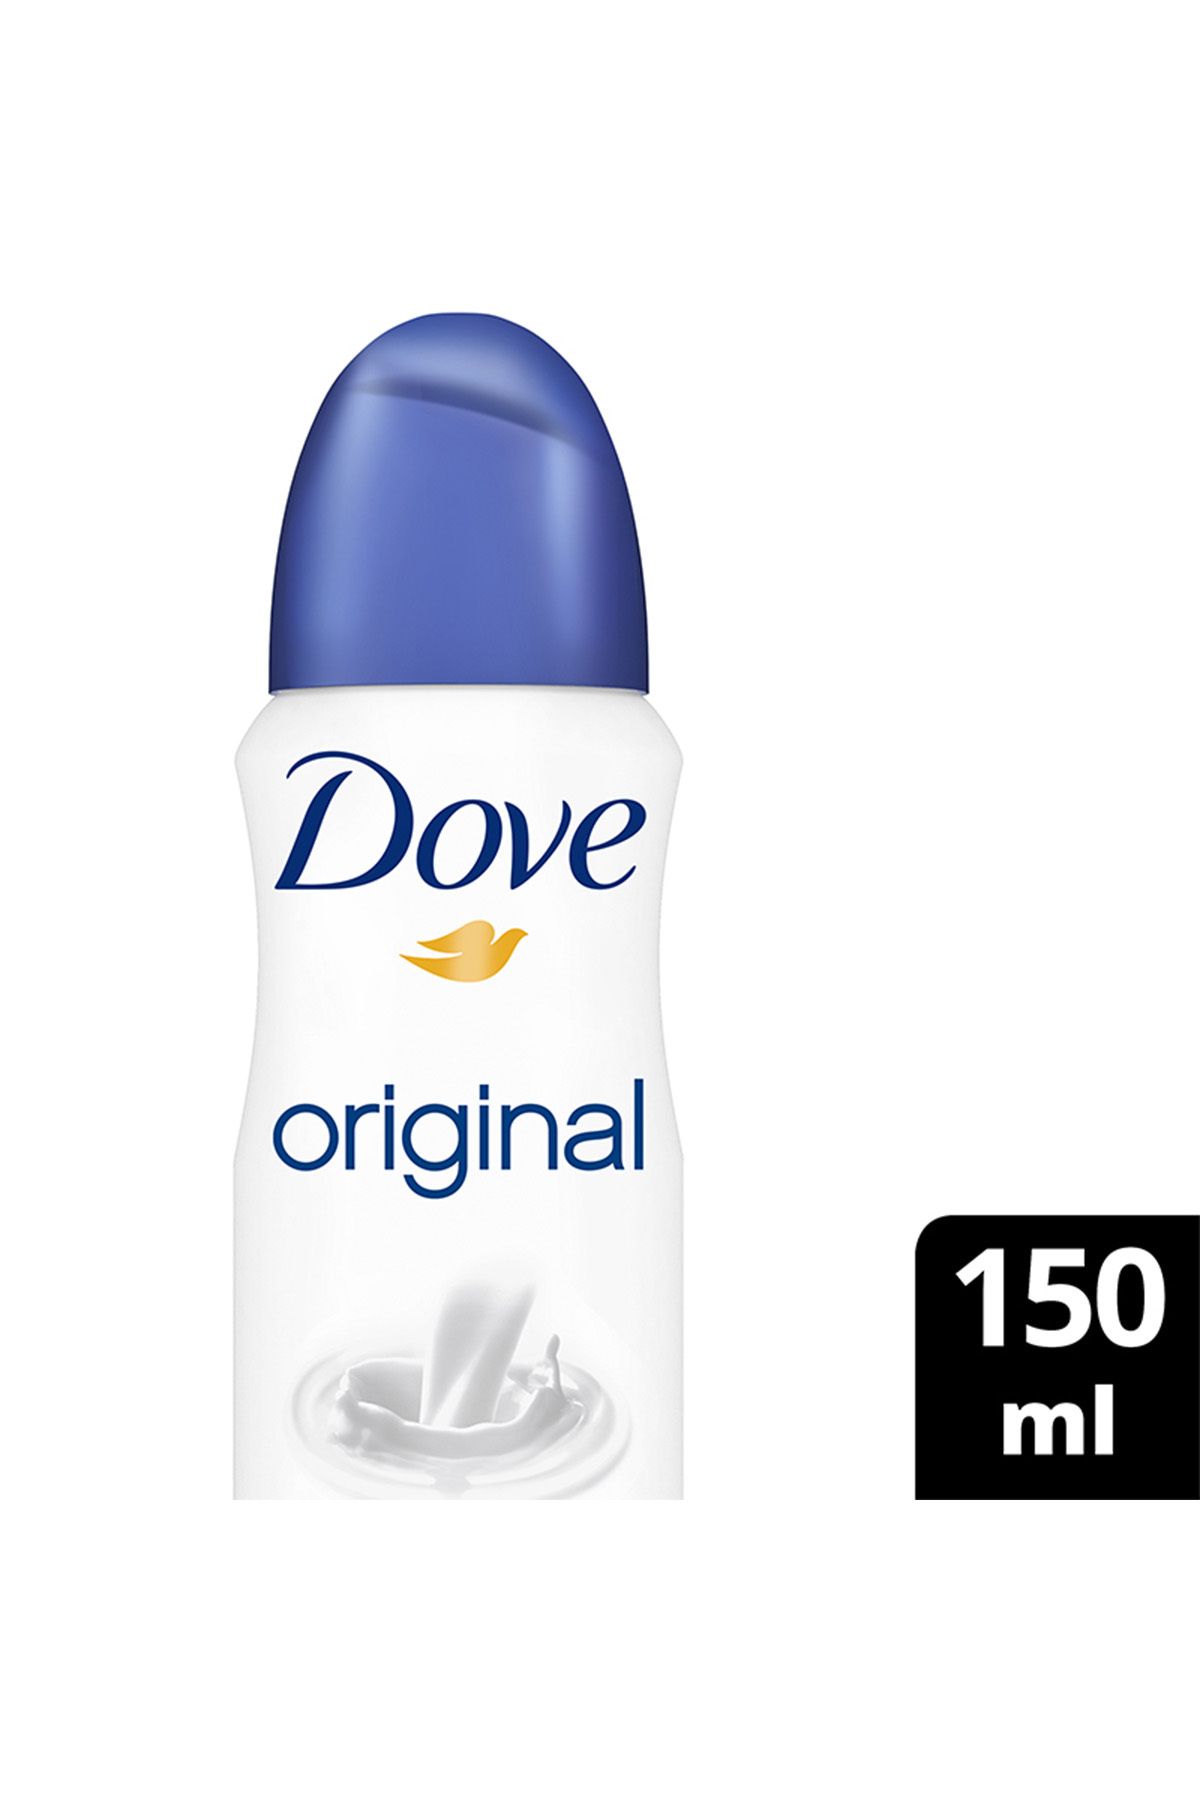 Dove Kadın Sprey Deodorant Original 150ml x1 Adet